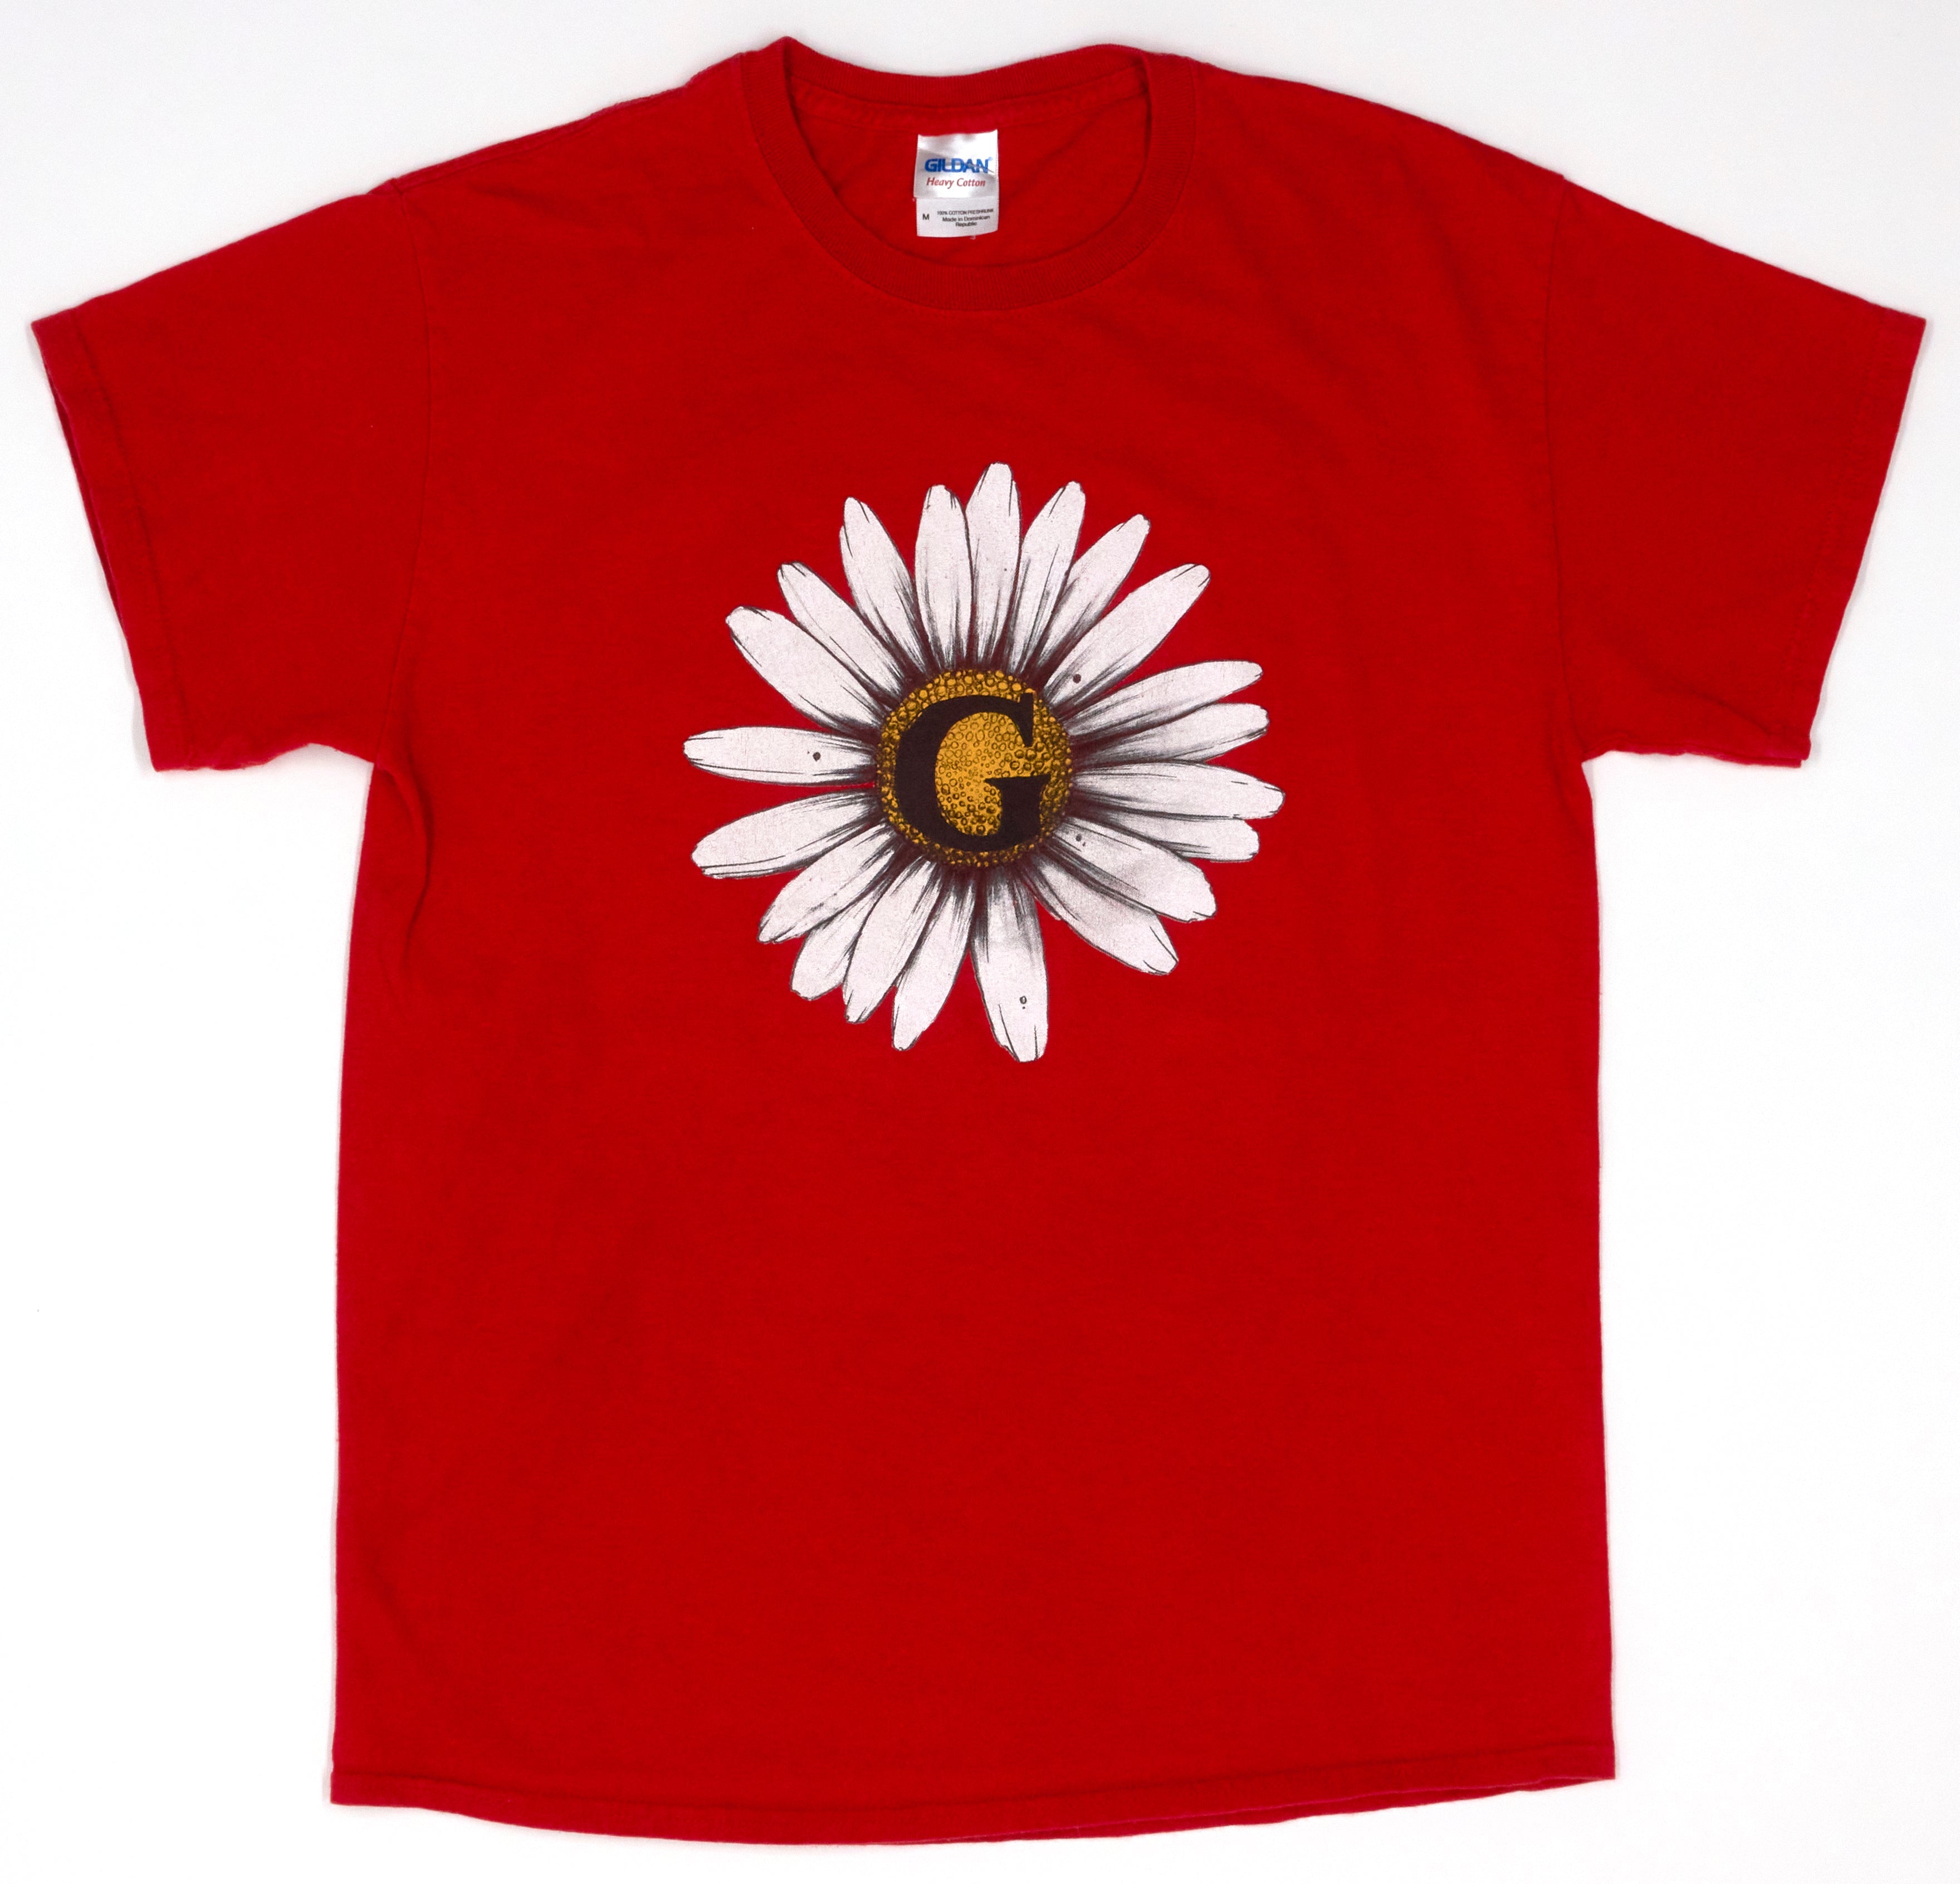 Give – Yellow Flower Revelation Logo Back Tour Shirt Size Medium